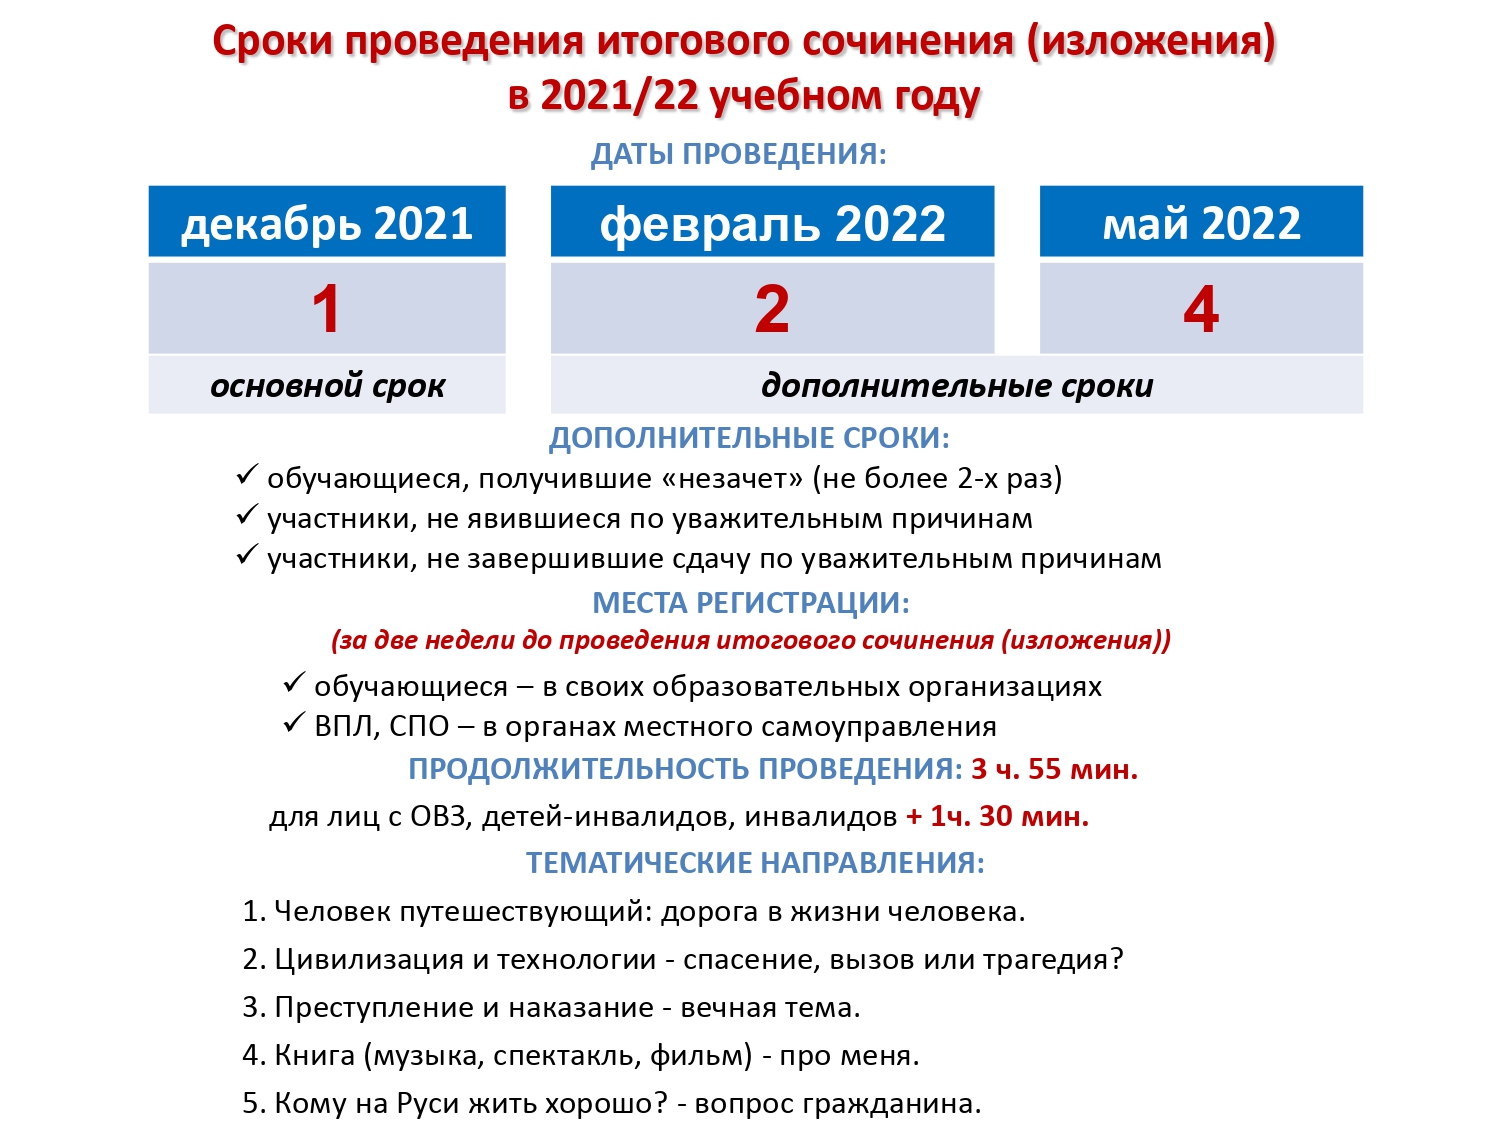 Сроки проведения итог сочин изл 2021 2022 1 стр page 0001